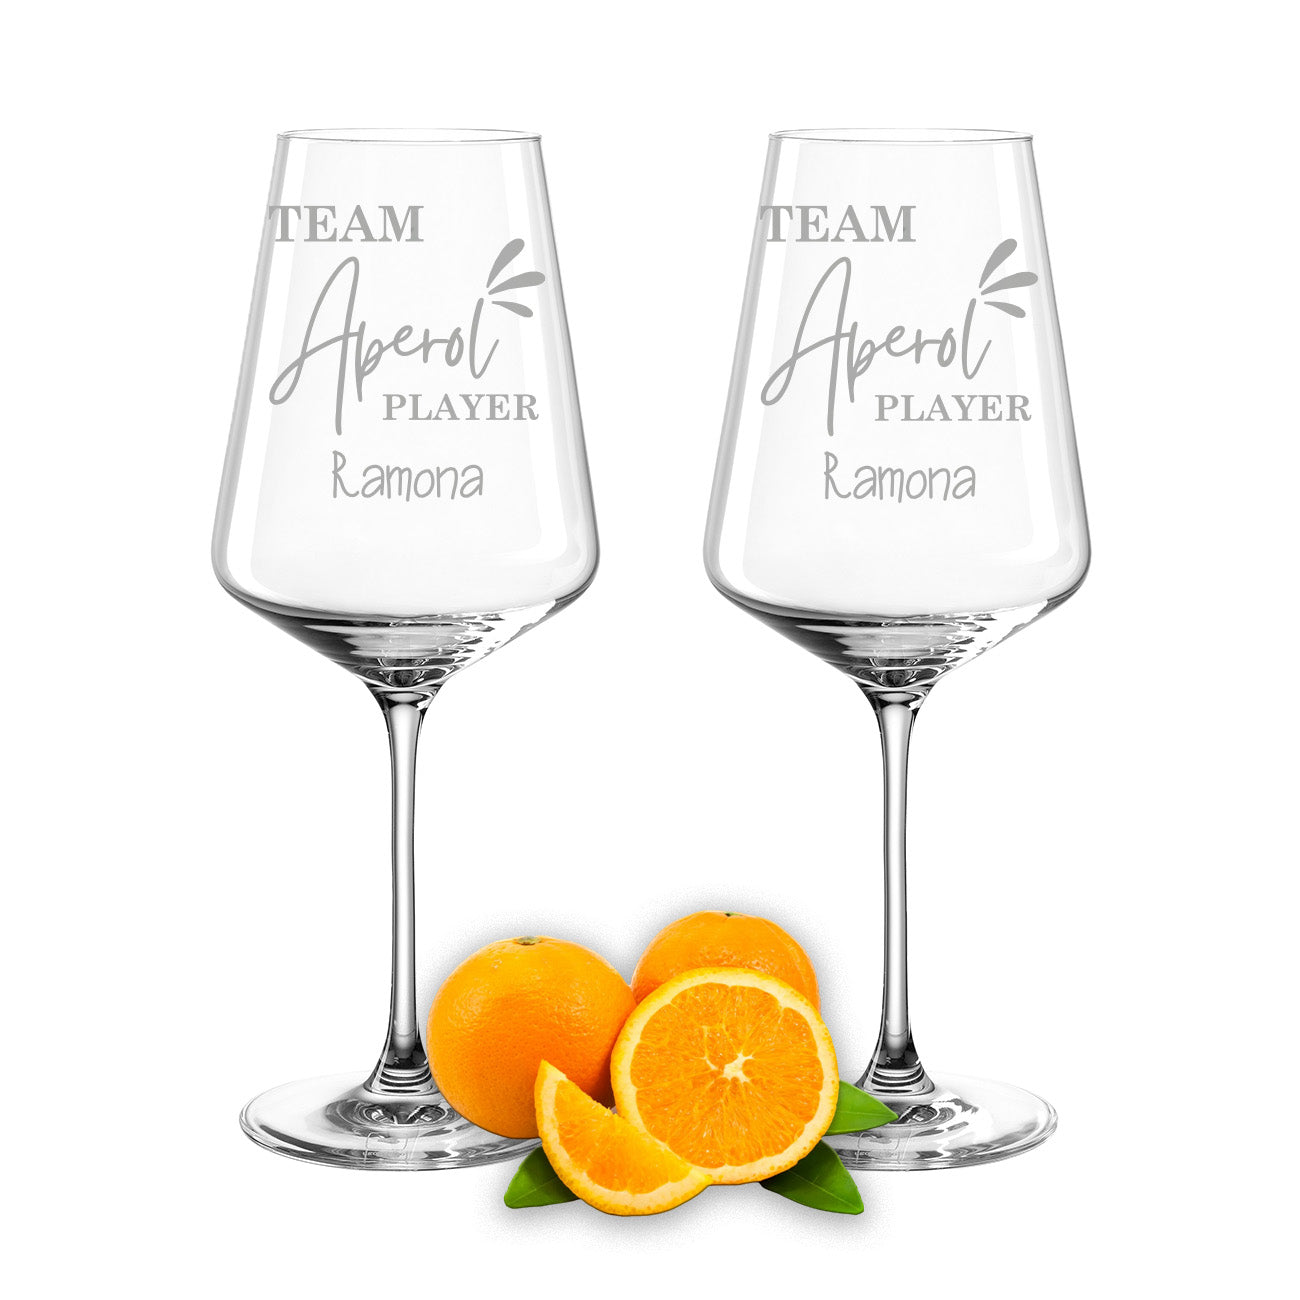 Weinglas mit Gravur Leonardo Puccini "TEAM APEROL PLAYER" 2 Gläser mit Wunschname